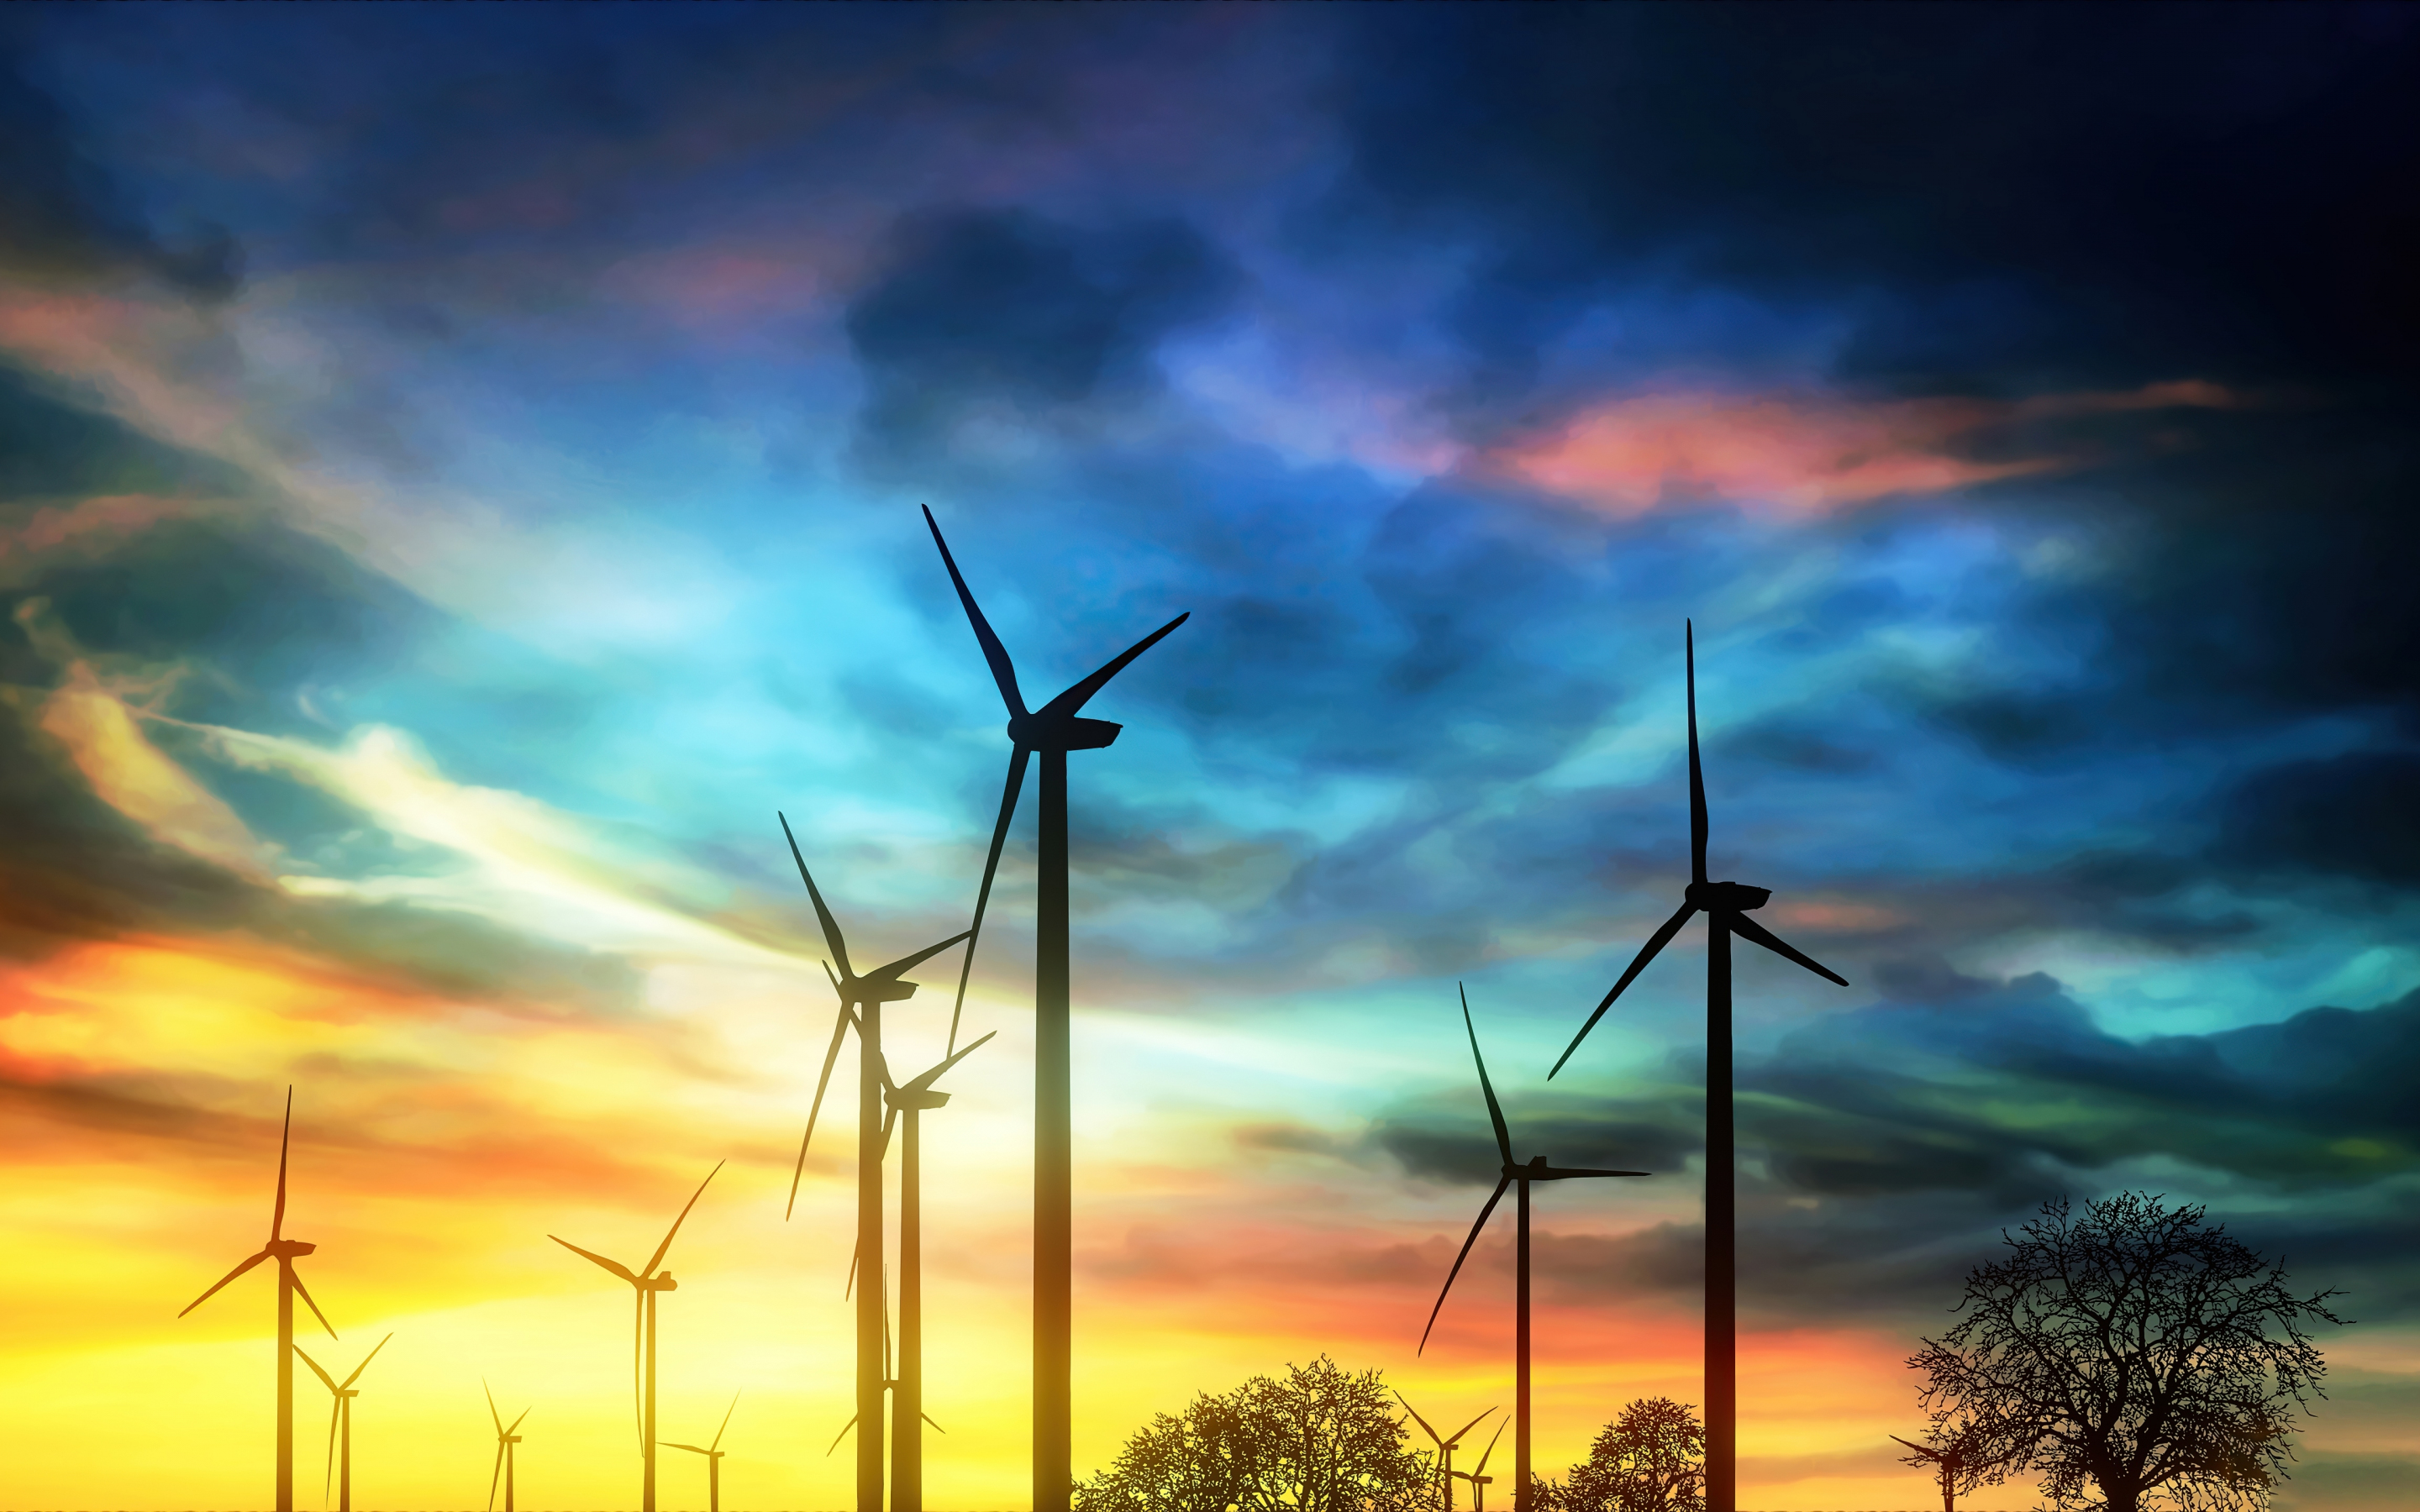 Windmills, cloudy sky, sunset, 2880x1800 wallpaper